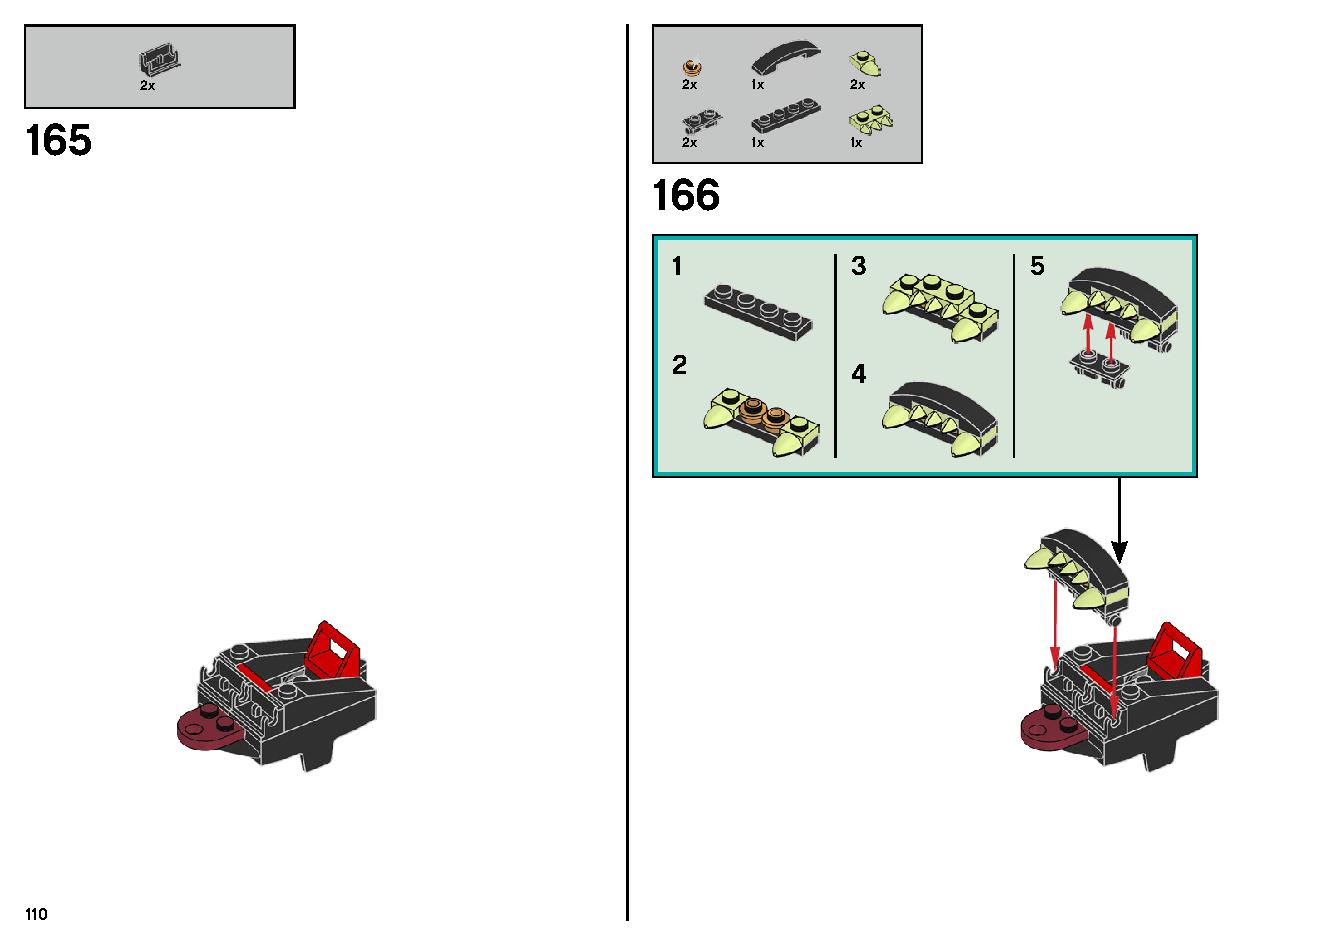 ゴーストのいる遊園地 70432 レゴの商品情報 レゴの説明書・組立方法 110 page